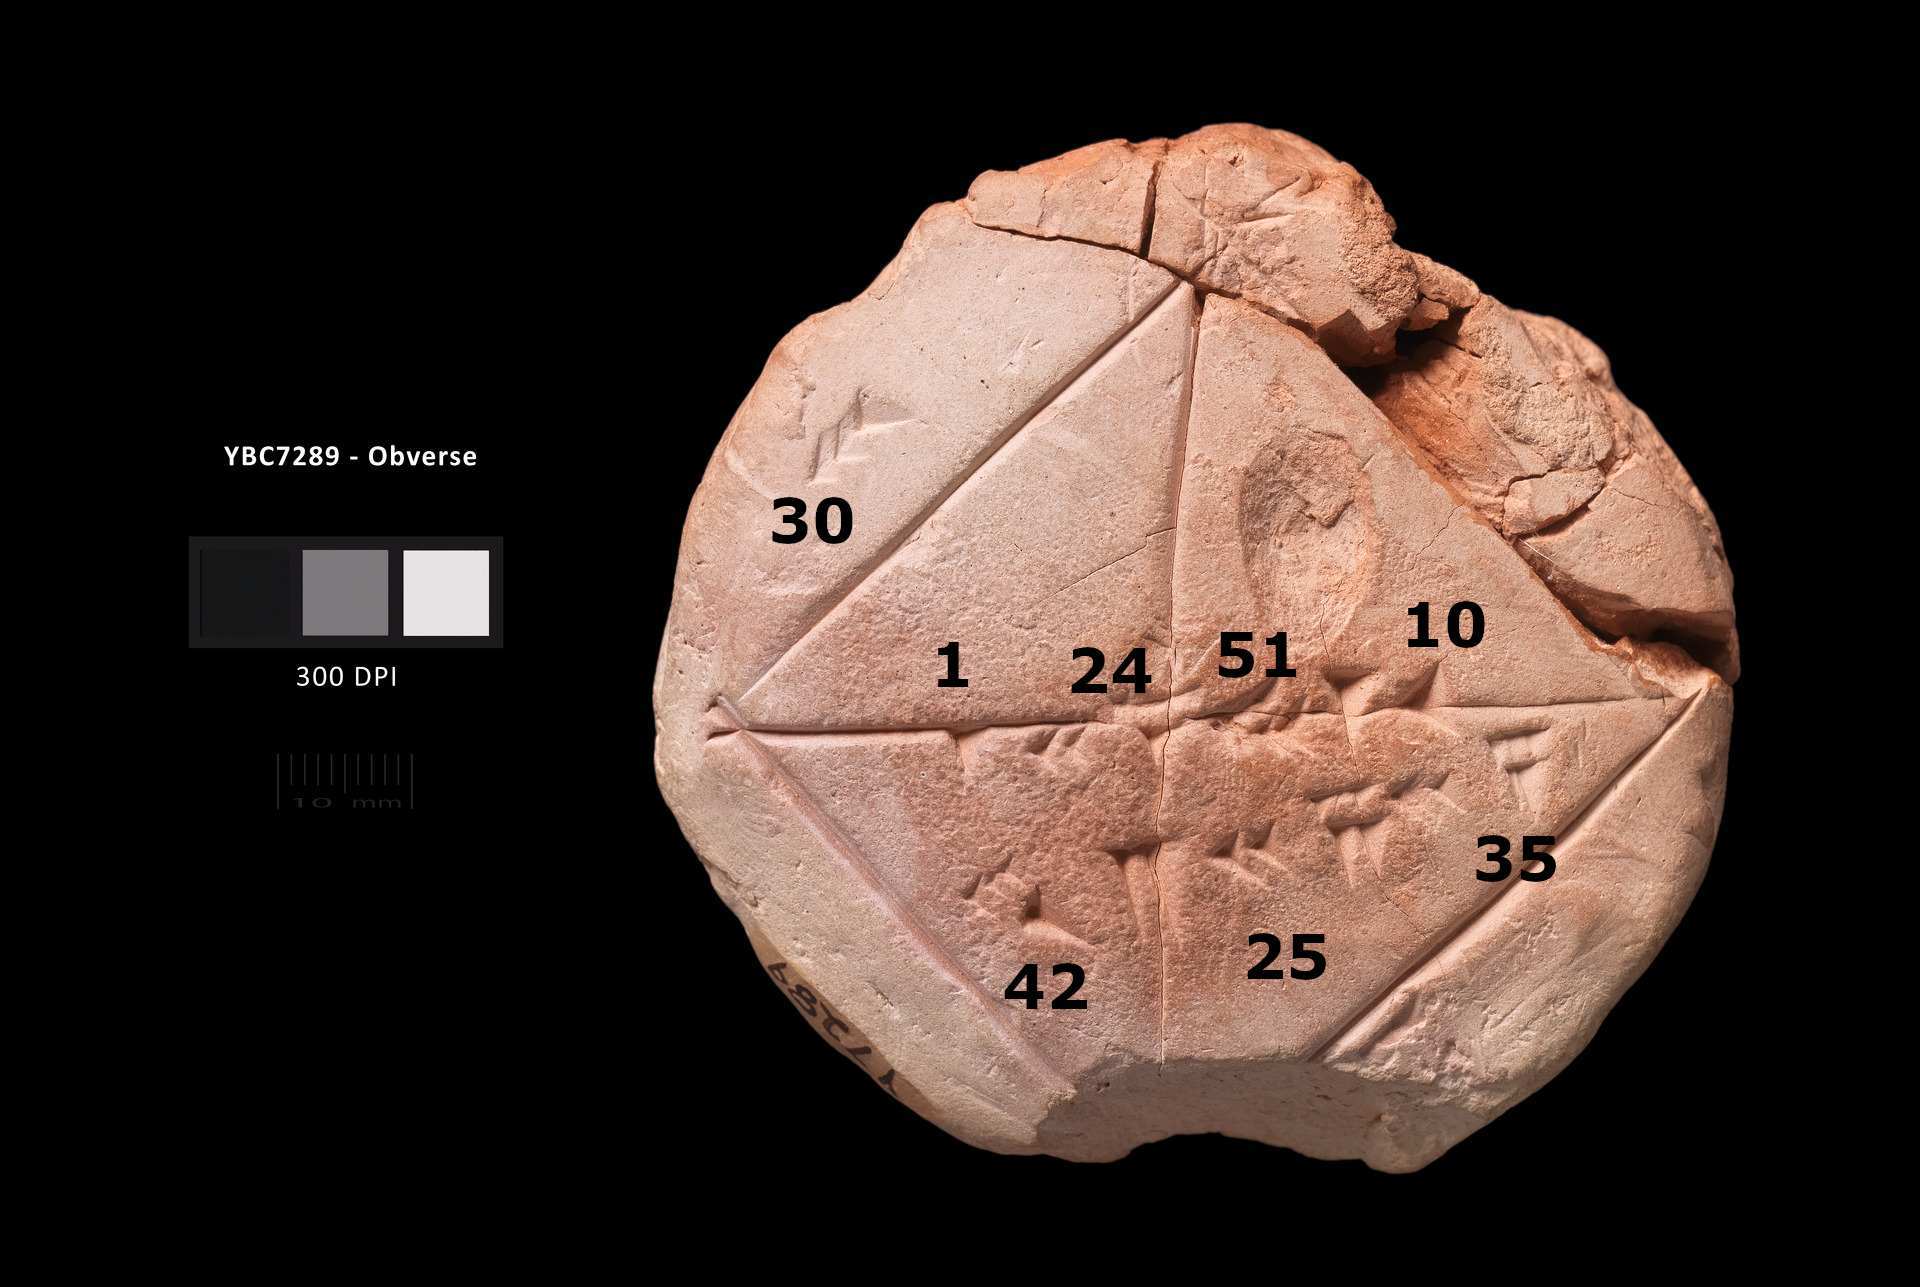 รูปถ่ายติดฉลากของแท็บเล็ต YBC 7289 . ของ Yale Babylonian Collection